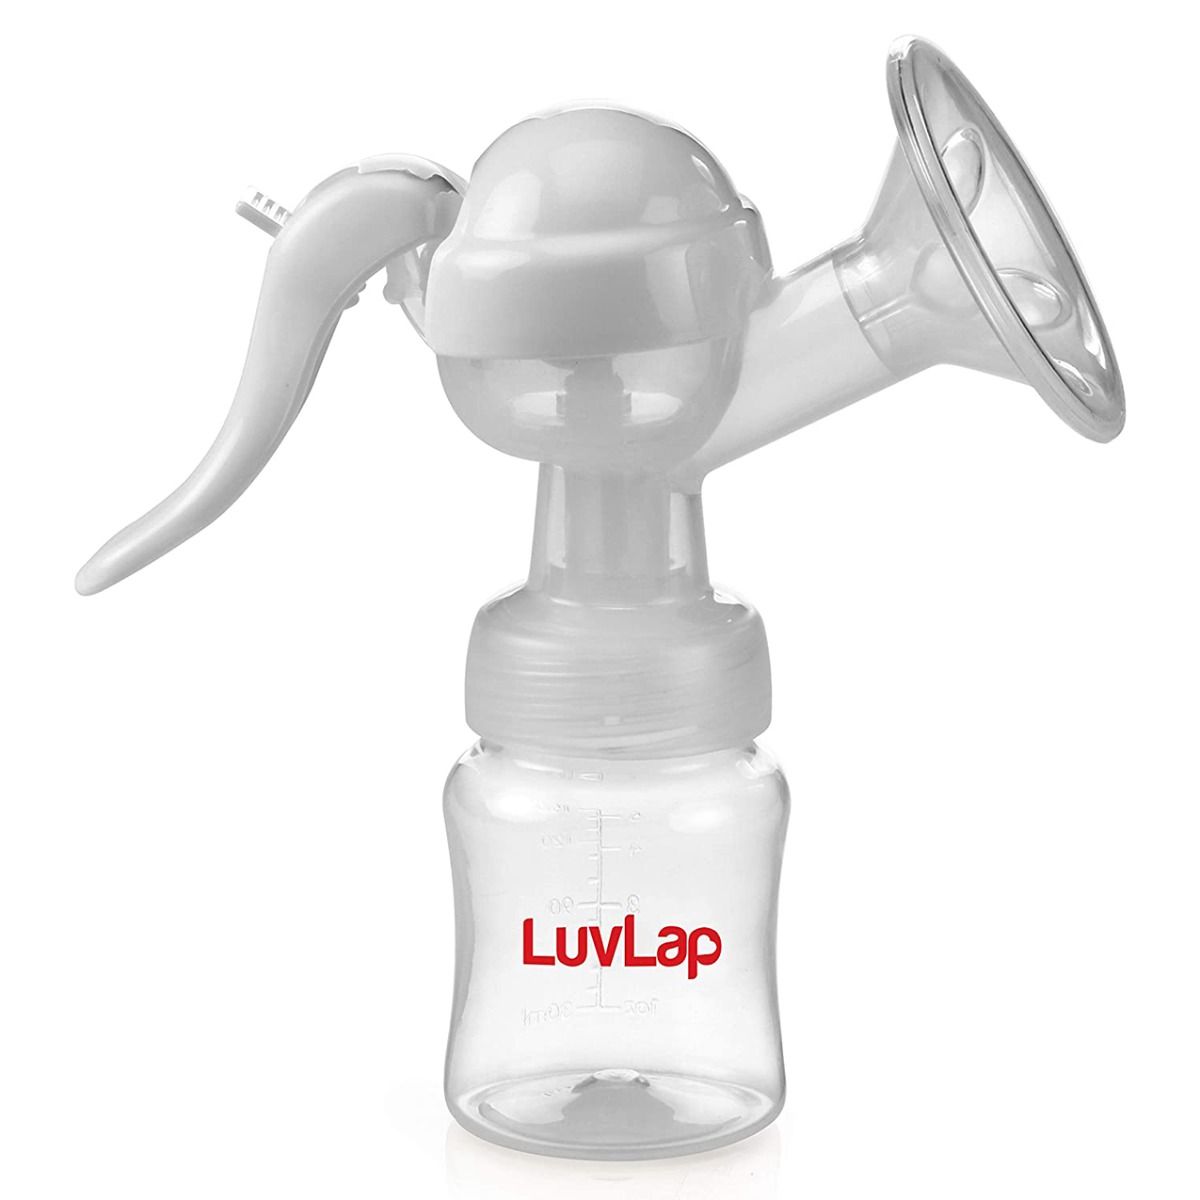 LuvLap Manual Breast Pump, 1 Count, Pack of 1 